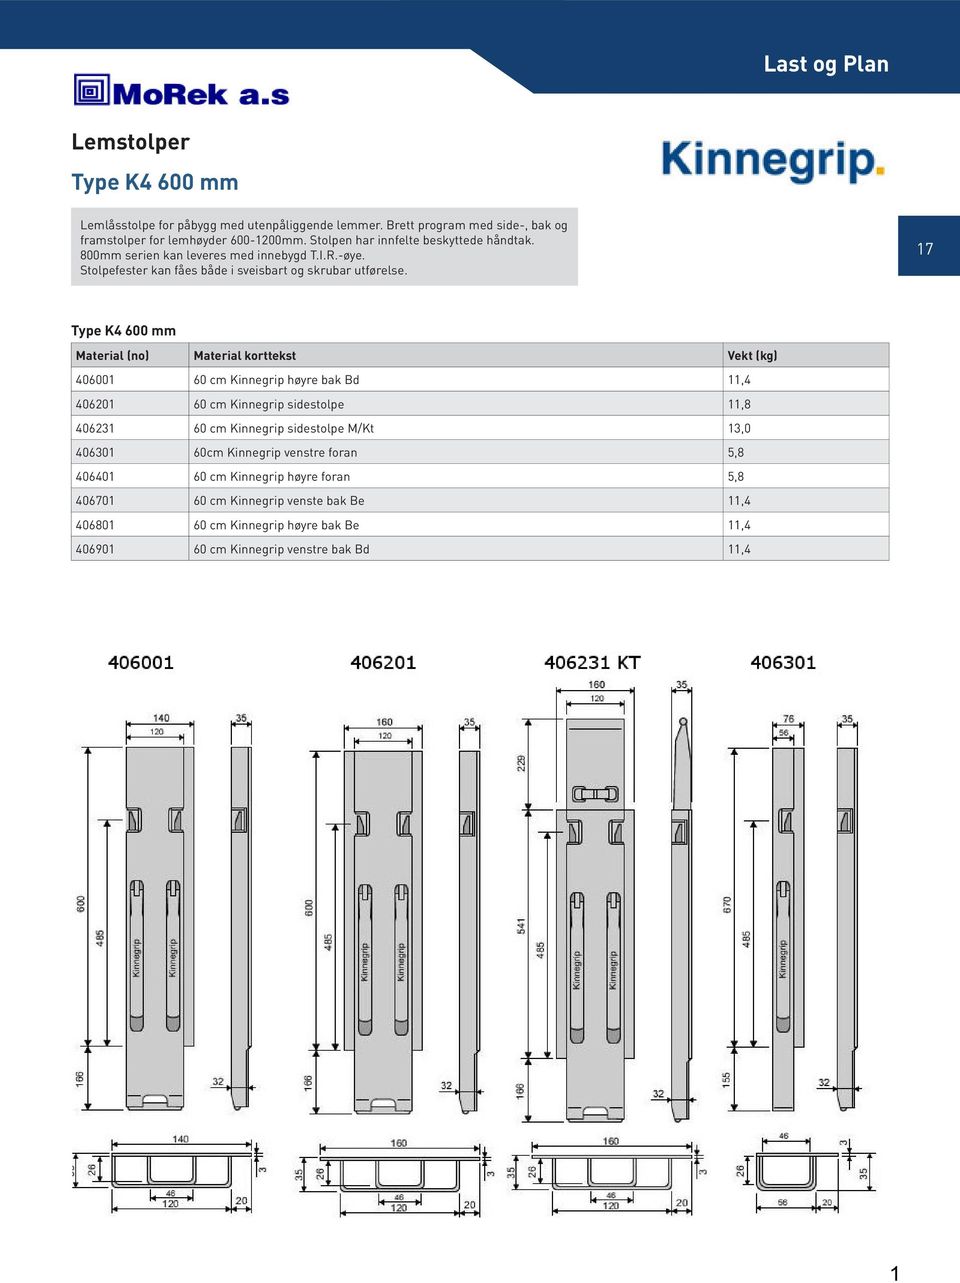 Type K4 600 mm Material (no) Material korttekst Vekt (kg) 406001 60 cm Kinnegrip høyre bak Bd 11,4 406201 60 cm Kinnegrip sidestolpe 11,8 406231 60 cm Kinnegrip sidestolpe